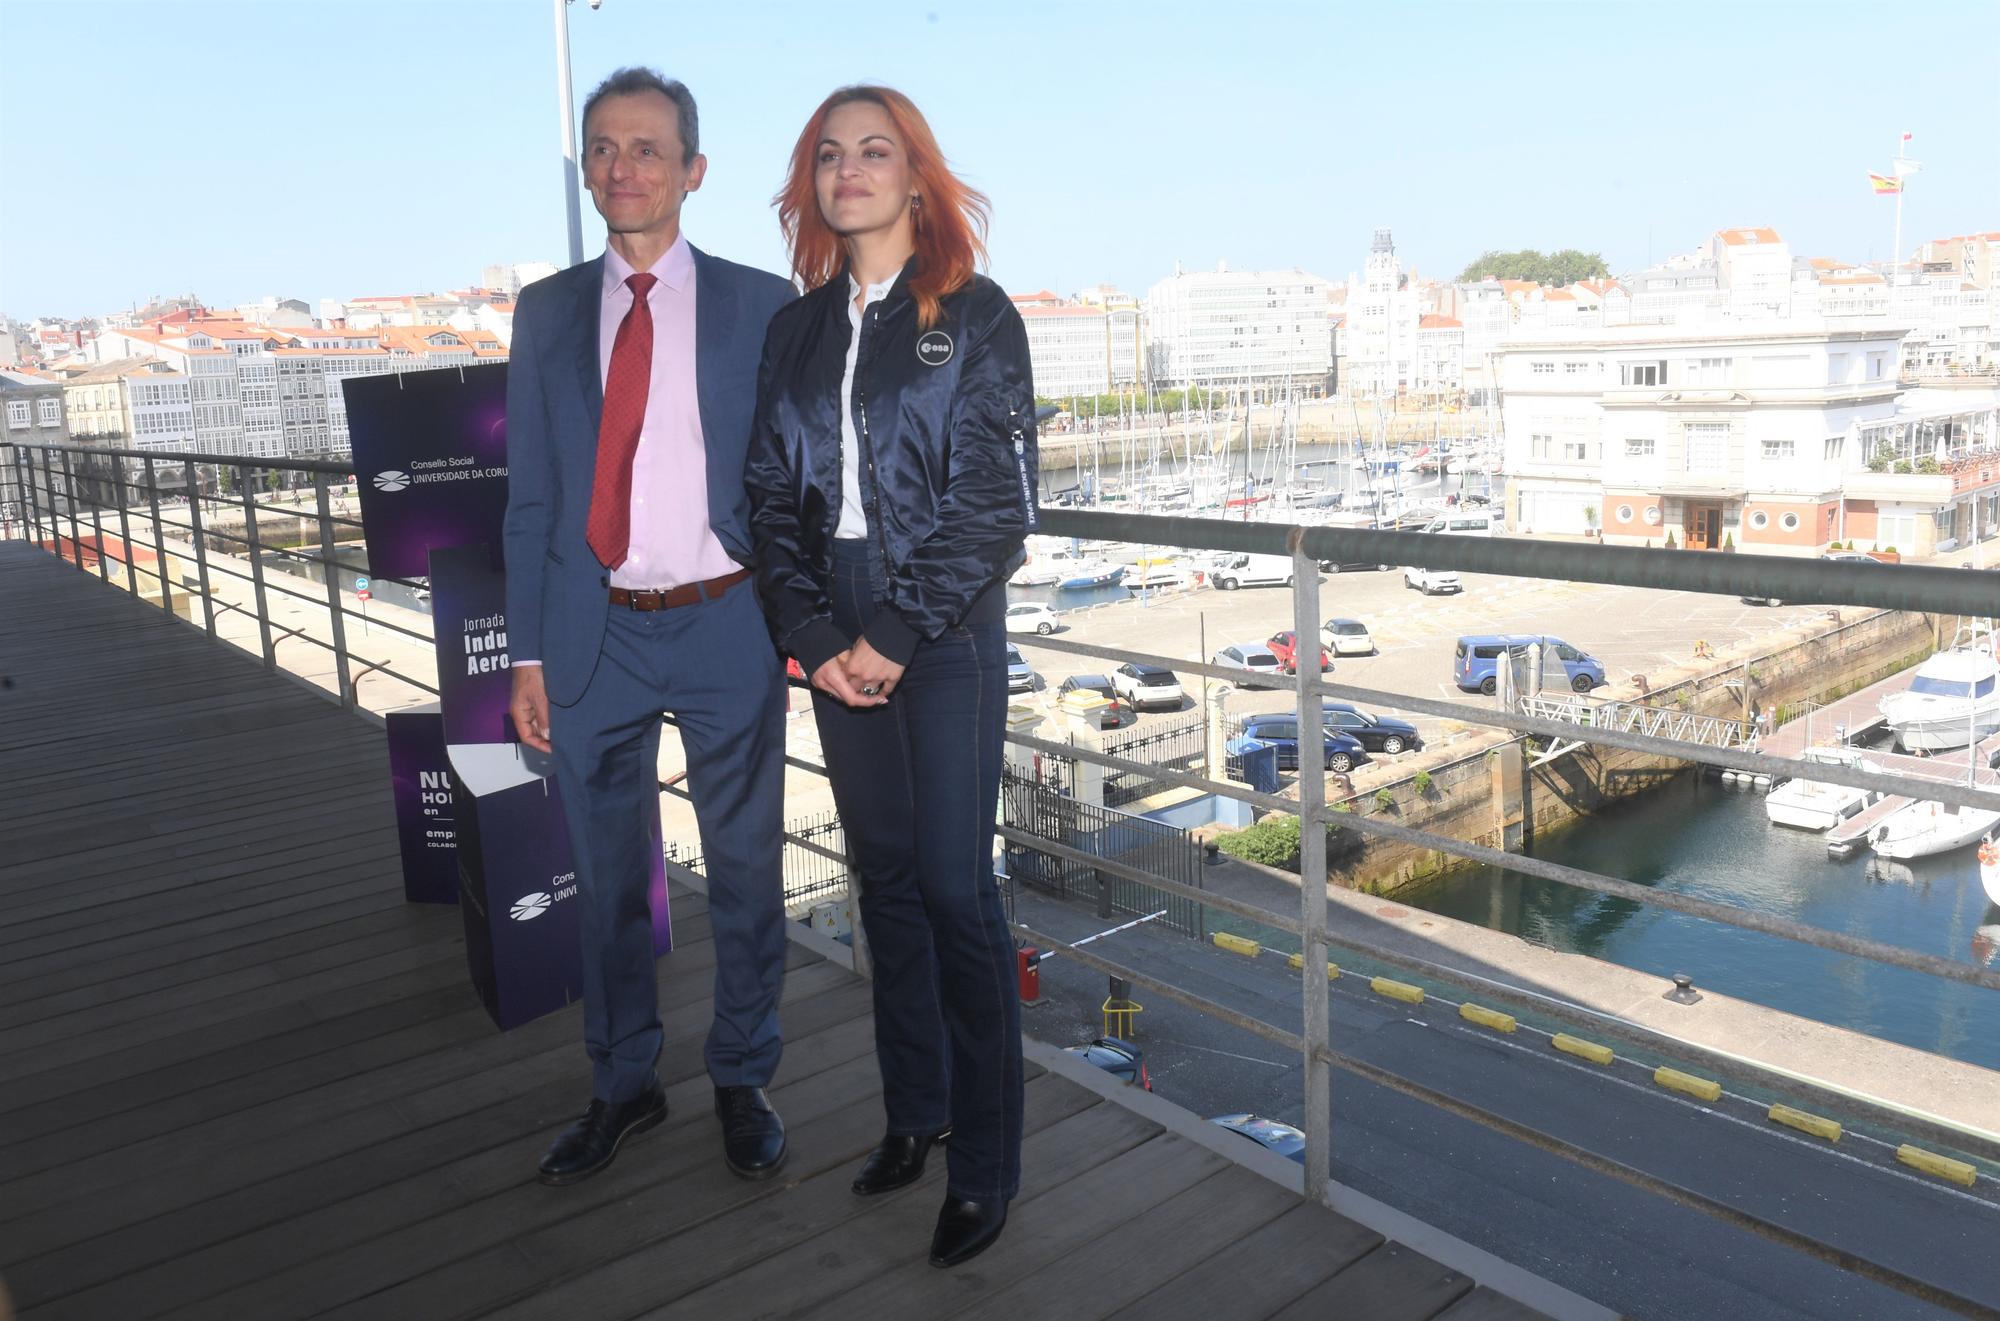 Dos astronautas en A Coruña a la conquista del espacio